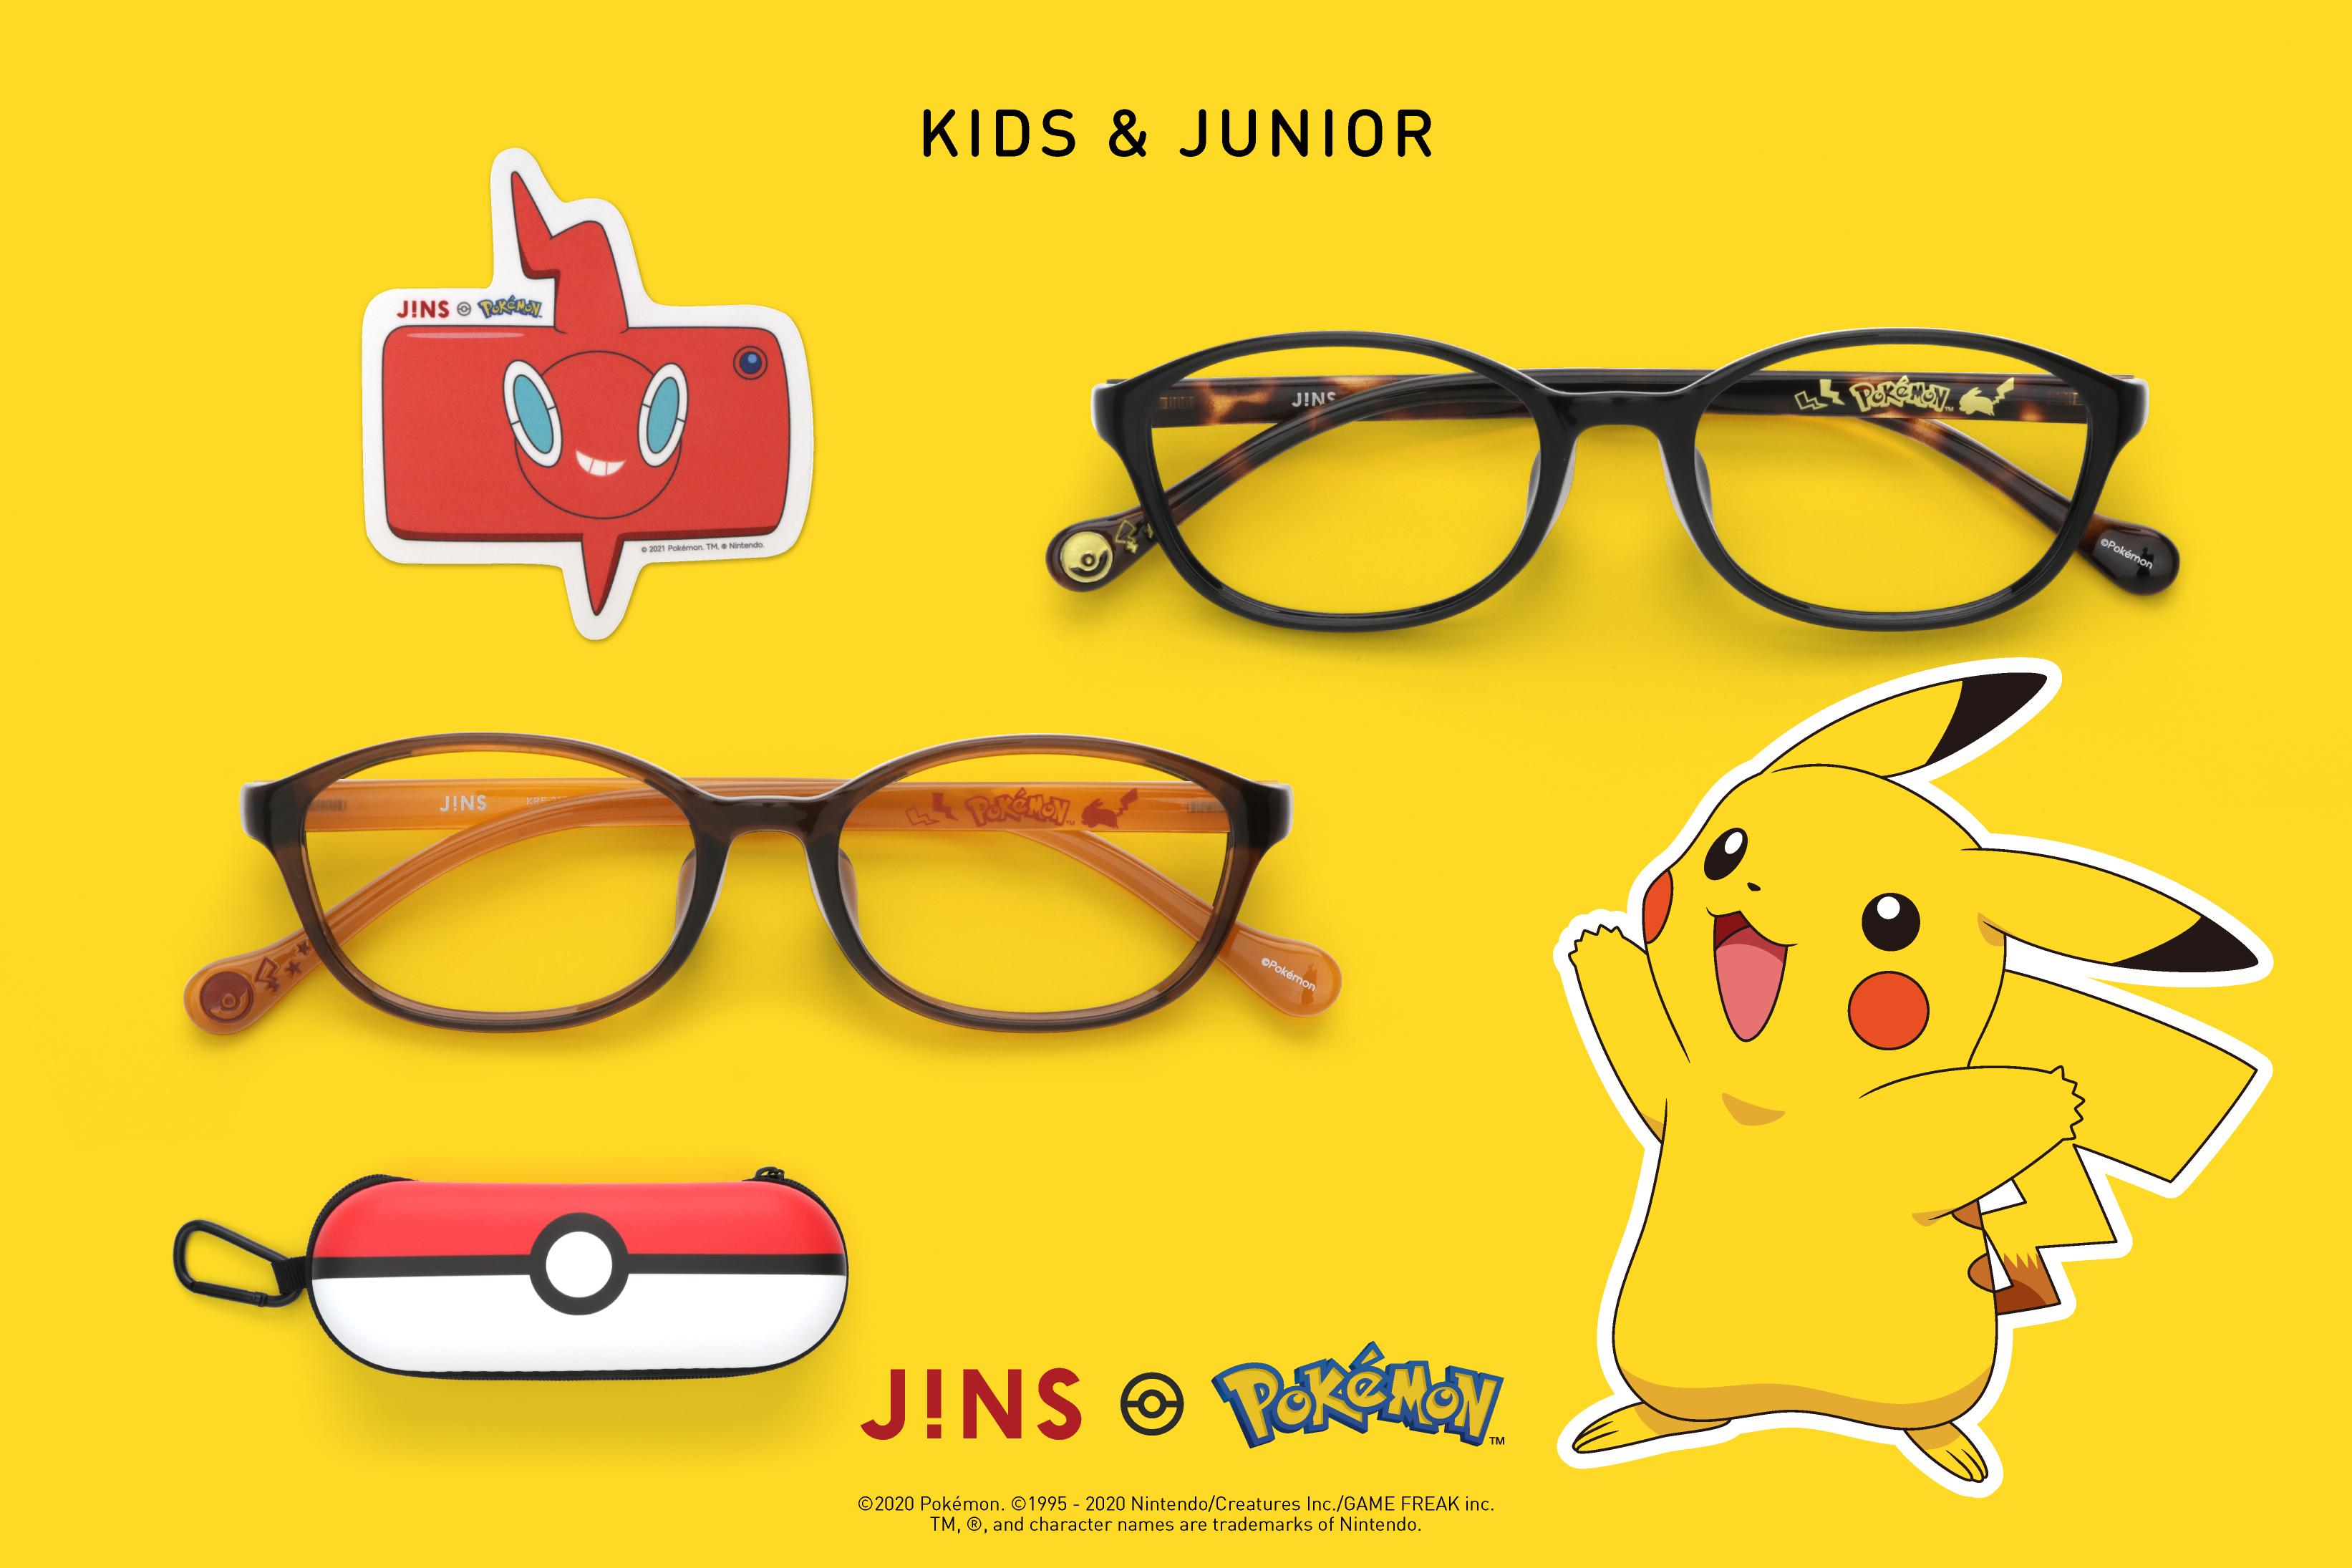 ポケモン」モデルの眼鏡が登場。「JINSポケモンモデル」5シリーズが2021年1月1日に発売